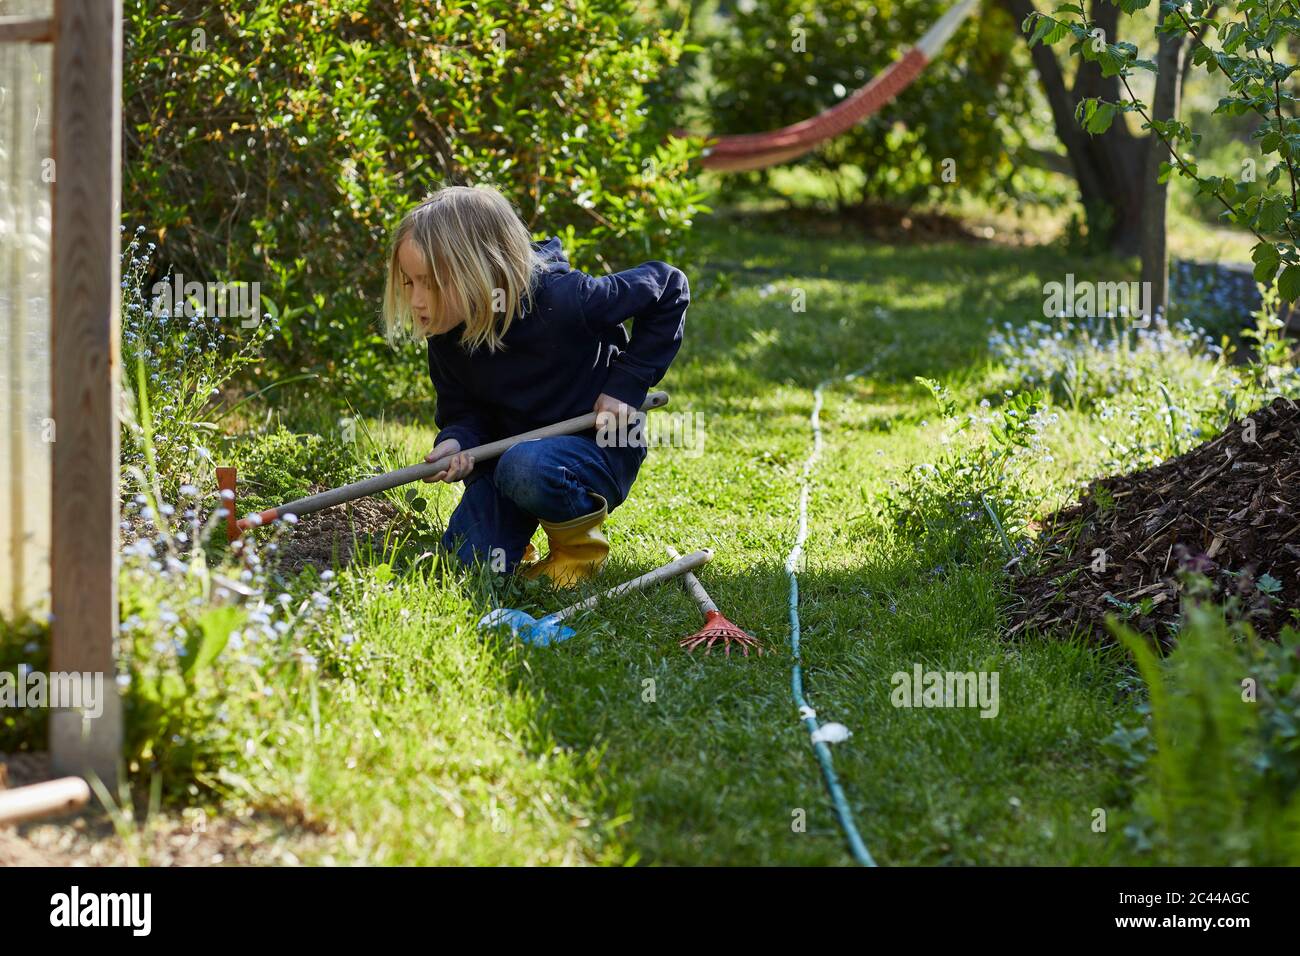 Fille travaillant avec une houe dans le jardin d'allotement Banque D'Images